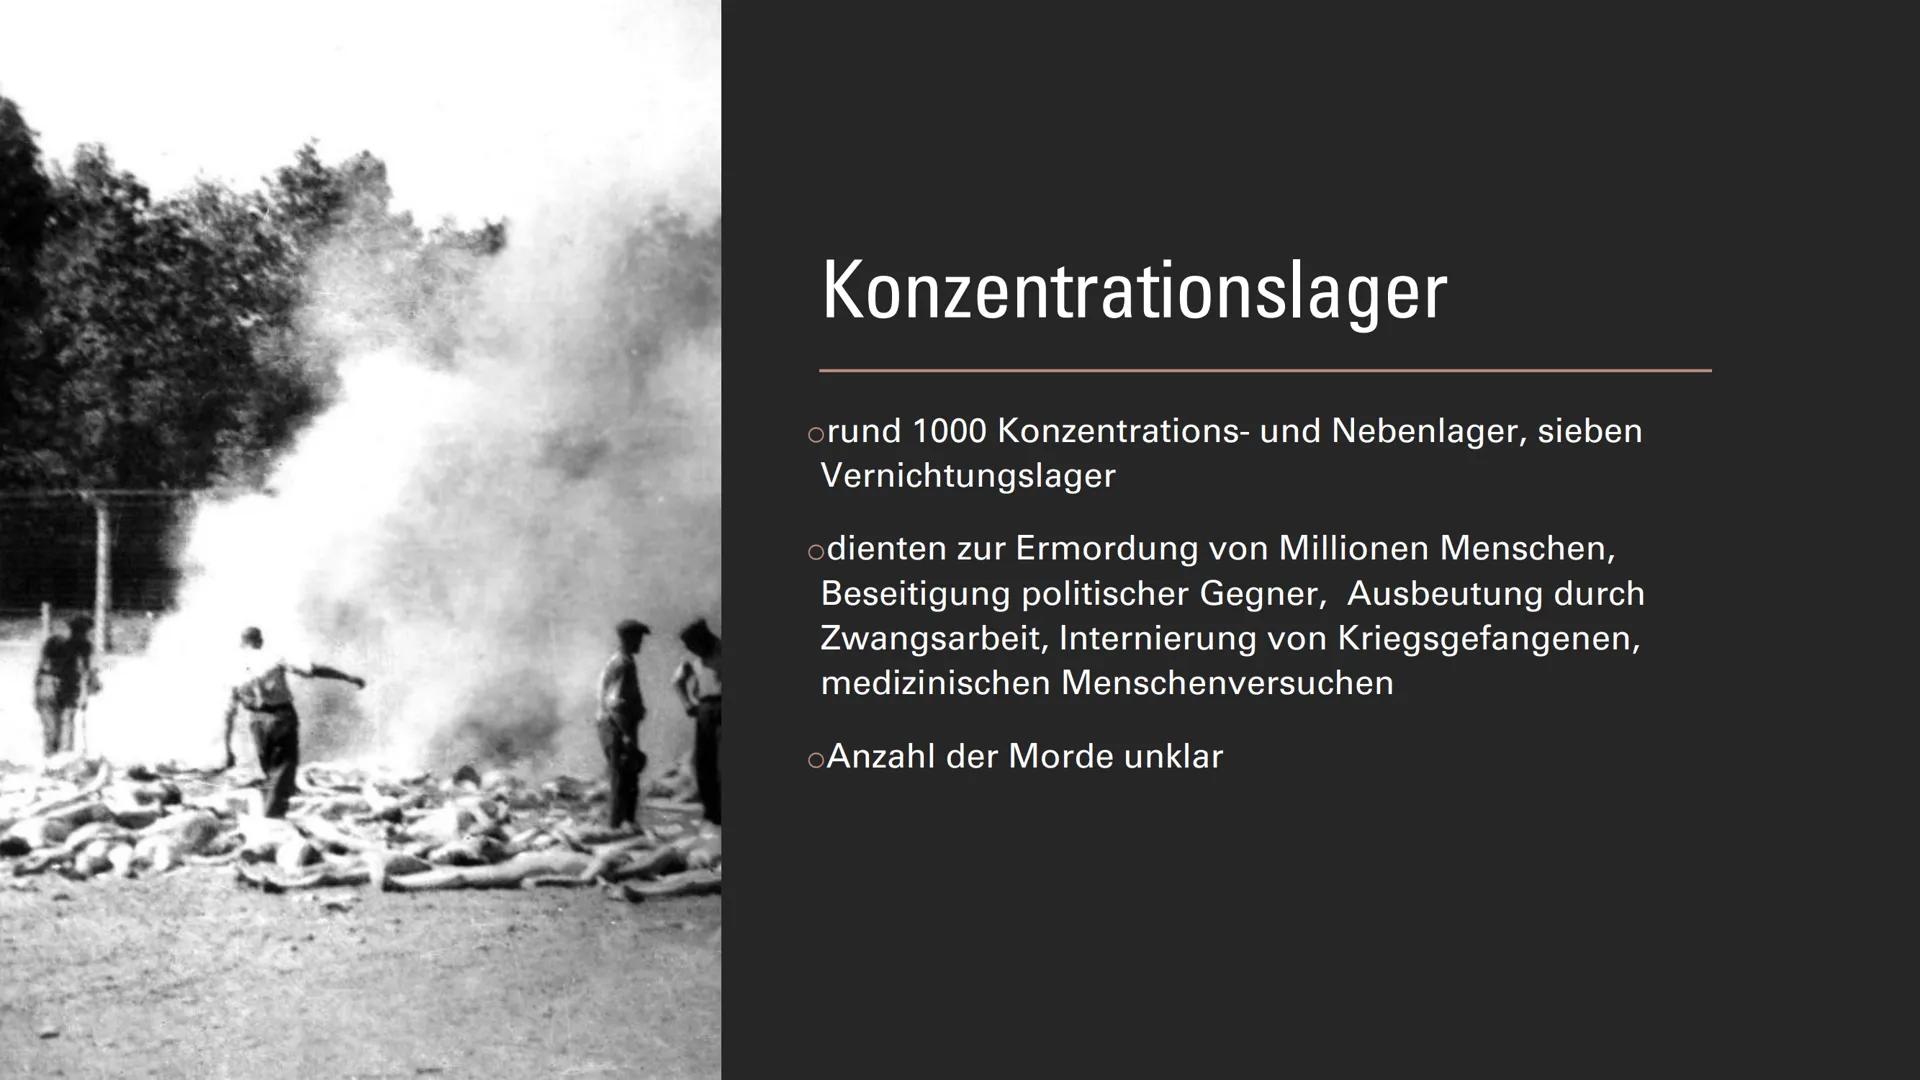 Judenverfolgung Präsentation
Ziele des Nationalsozialismus
●
●
Ausgrenzung und Vertreibung der Juden von der NSDAP Nationalsozialistische de